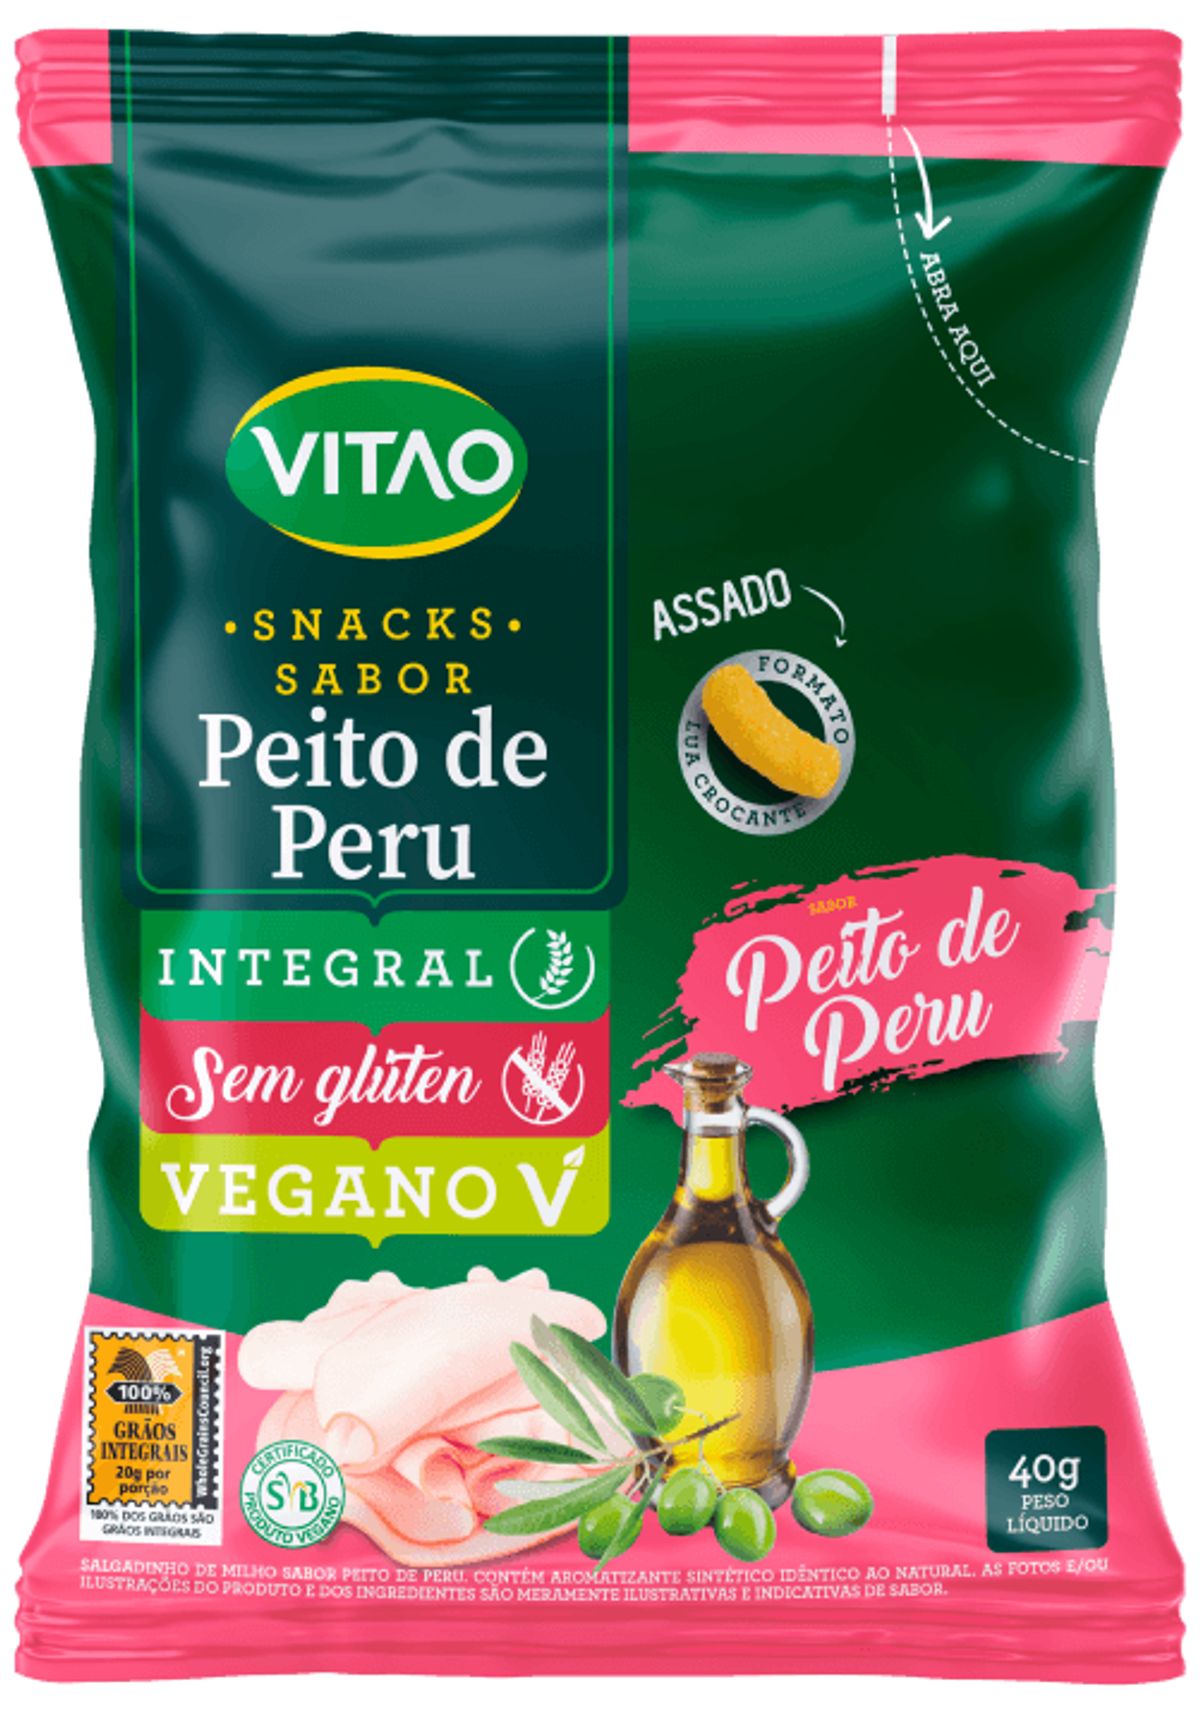 Snack Integral Vitao Peito de Peru 40g